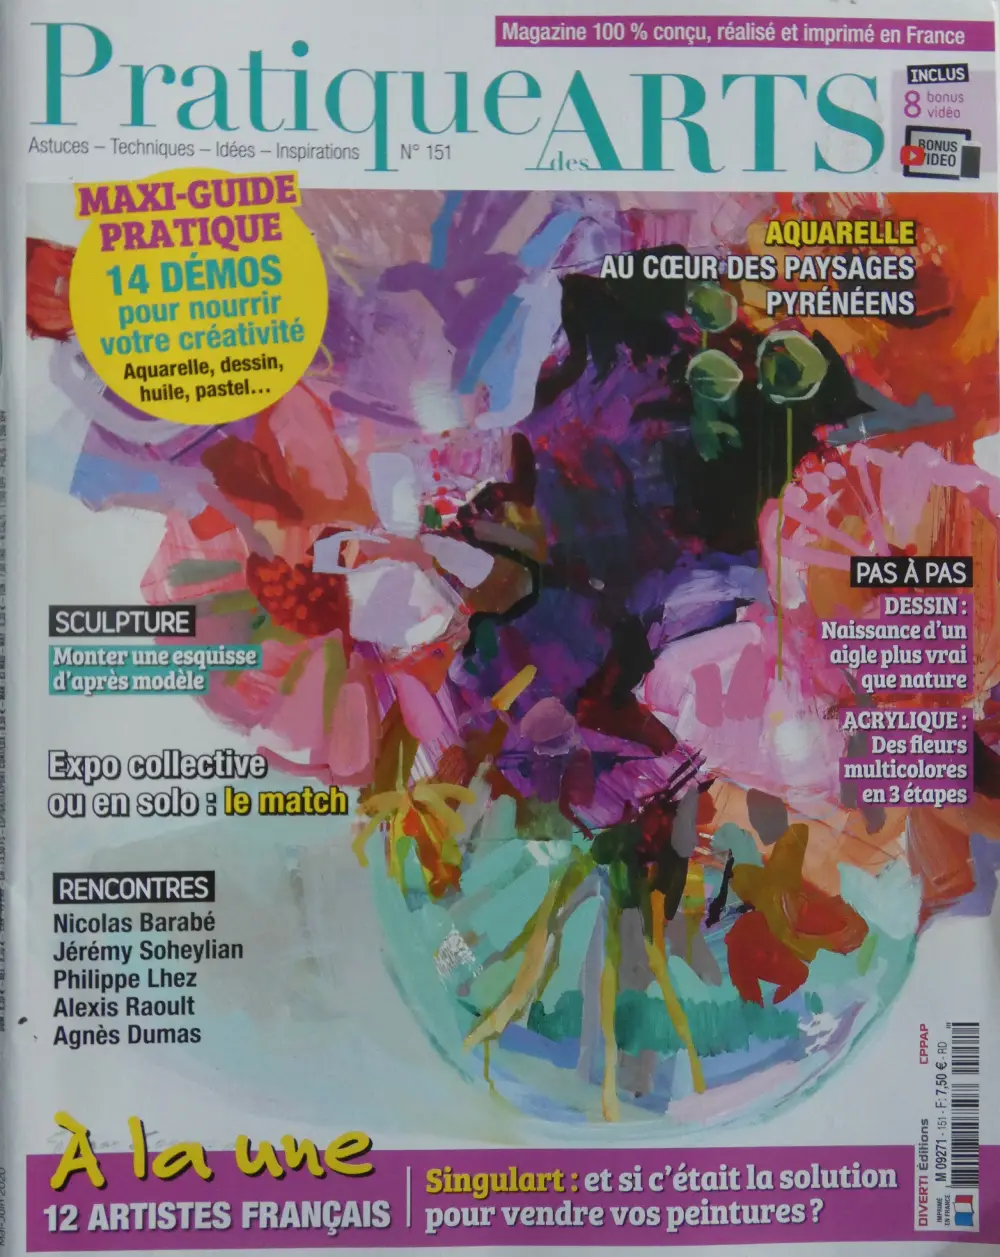 Magazine Pratique des Arts n°151-2020. Le guide pratique encore plus de pas à pas pour toutes les techniques Artiste Daniel Germain. Article : Fanfare alla prima.